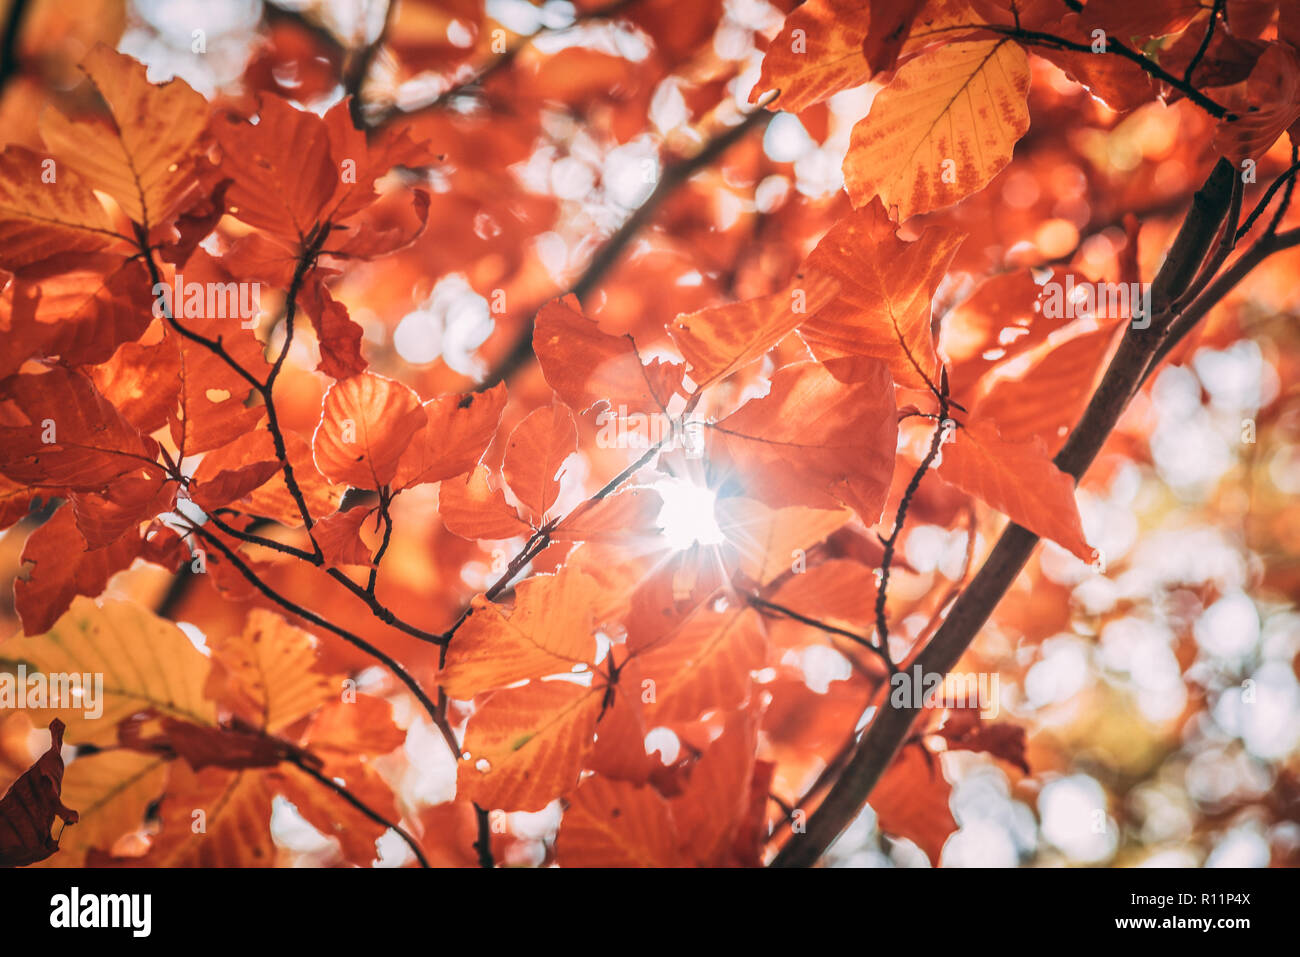 Schöne makro Herbst Bild - gelbe Blätter, warmen Farben, sanfter verschwommenen Hintergrund, die Sonne scheint durch - die Schönheit der Fallen Stockfoto